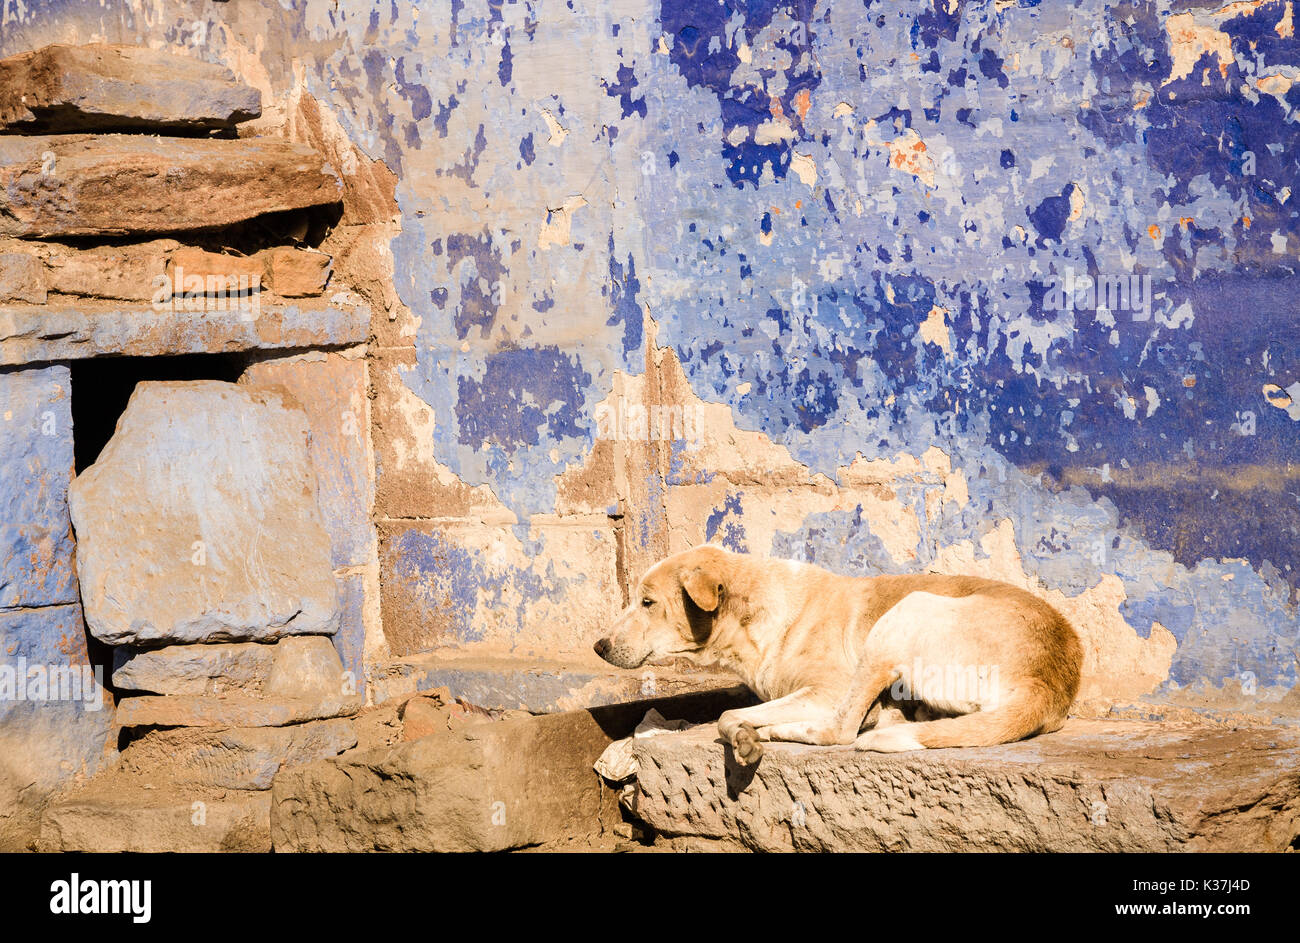 Un coin chambre beige marron chien d'indiens contre un mur bleu dans la ville de Jodphur au Rajasthan, Inde Banque D'Images